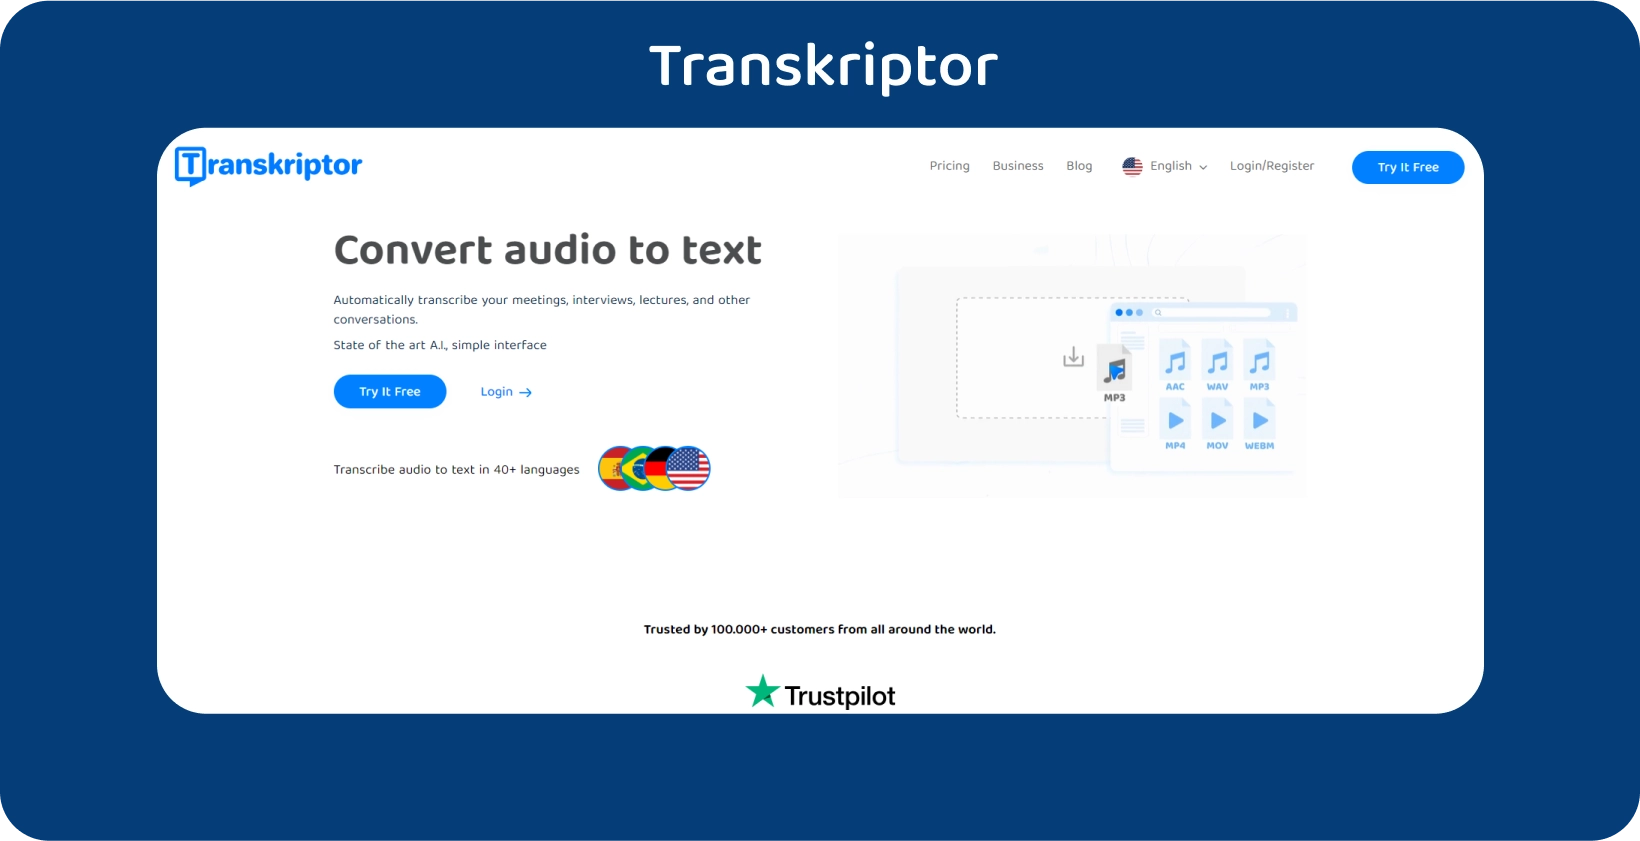 Page d’accueil de Transkriptor avec un appel à l’action clair, offrant des services de transcription audio en texte.